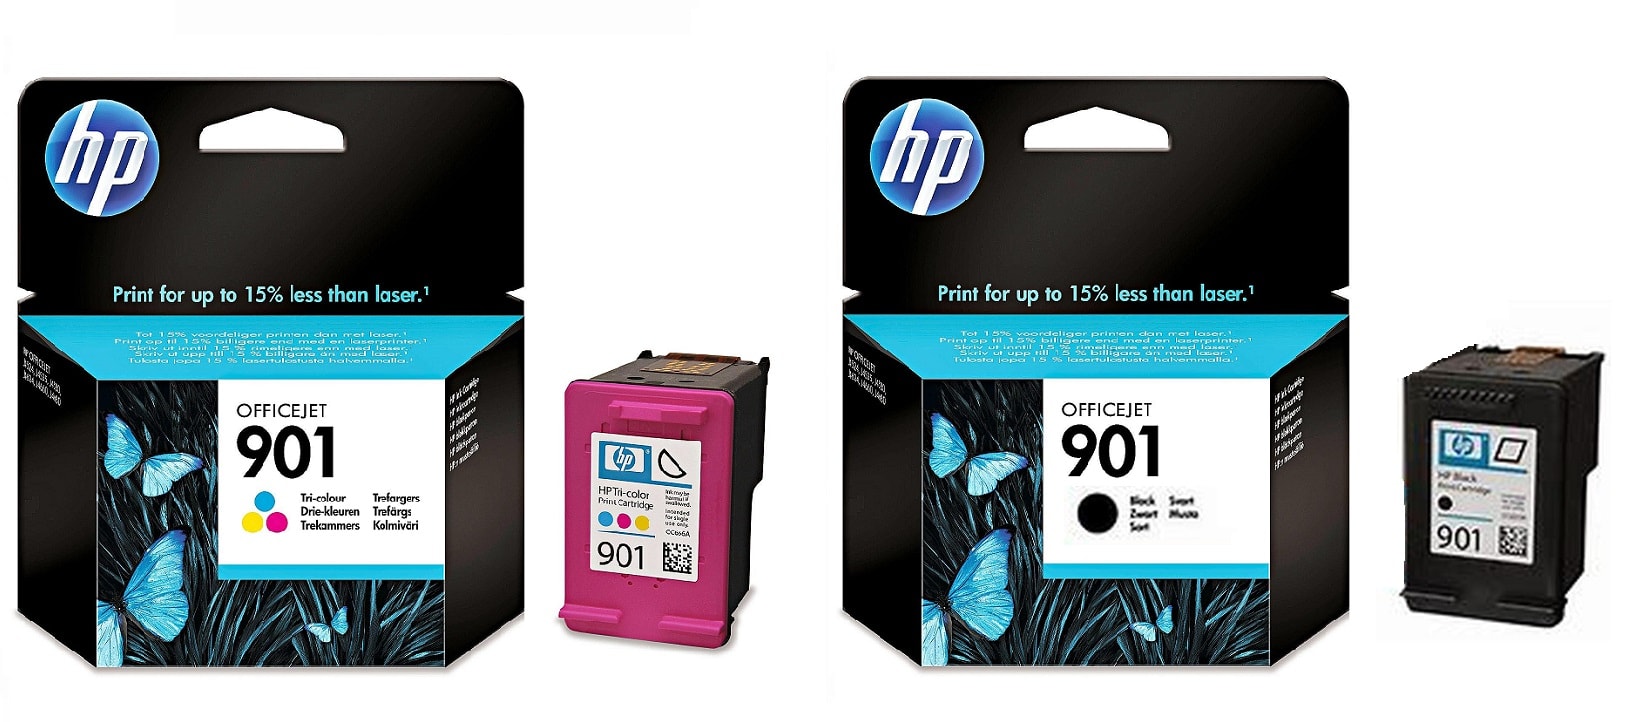 Картриджи hp 901 black hp 901 color для HP Officejet J4580. Купить комплект оригинальных картриджей.